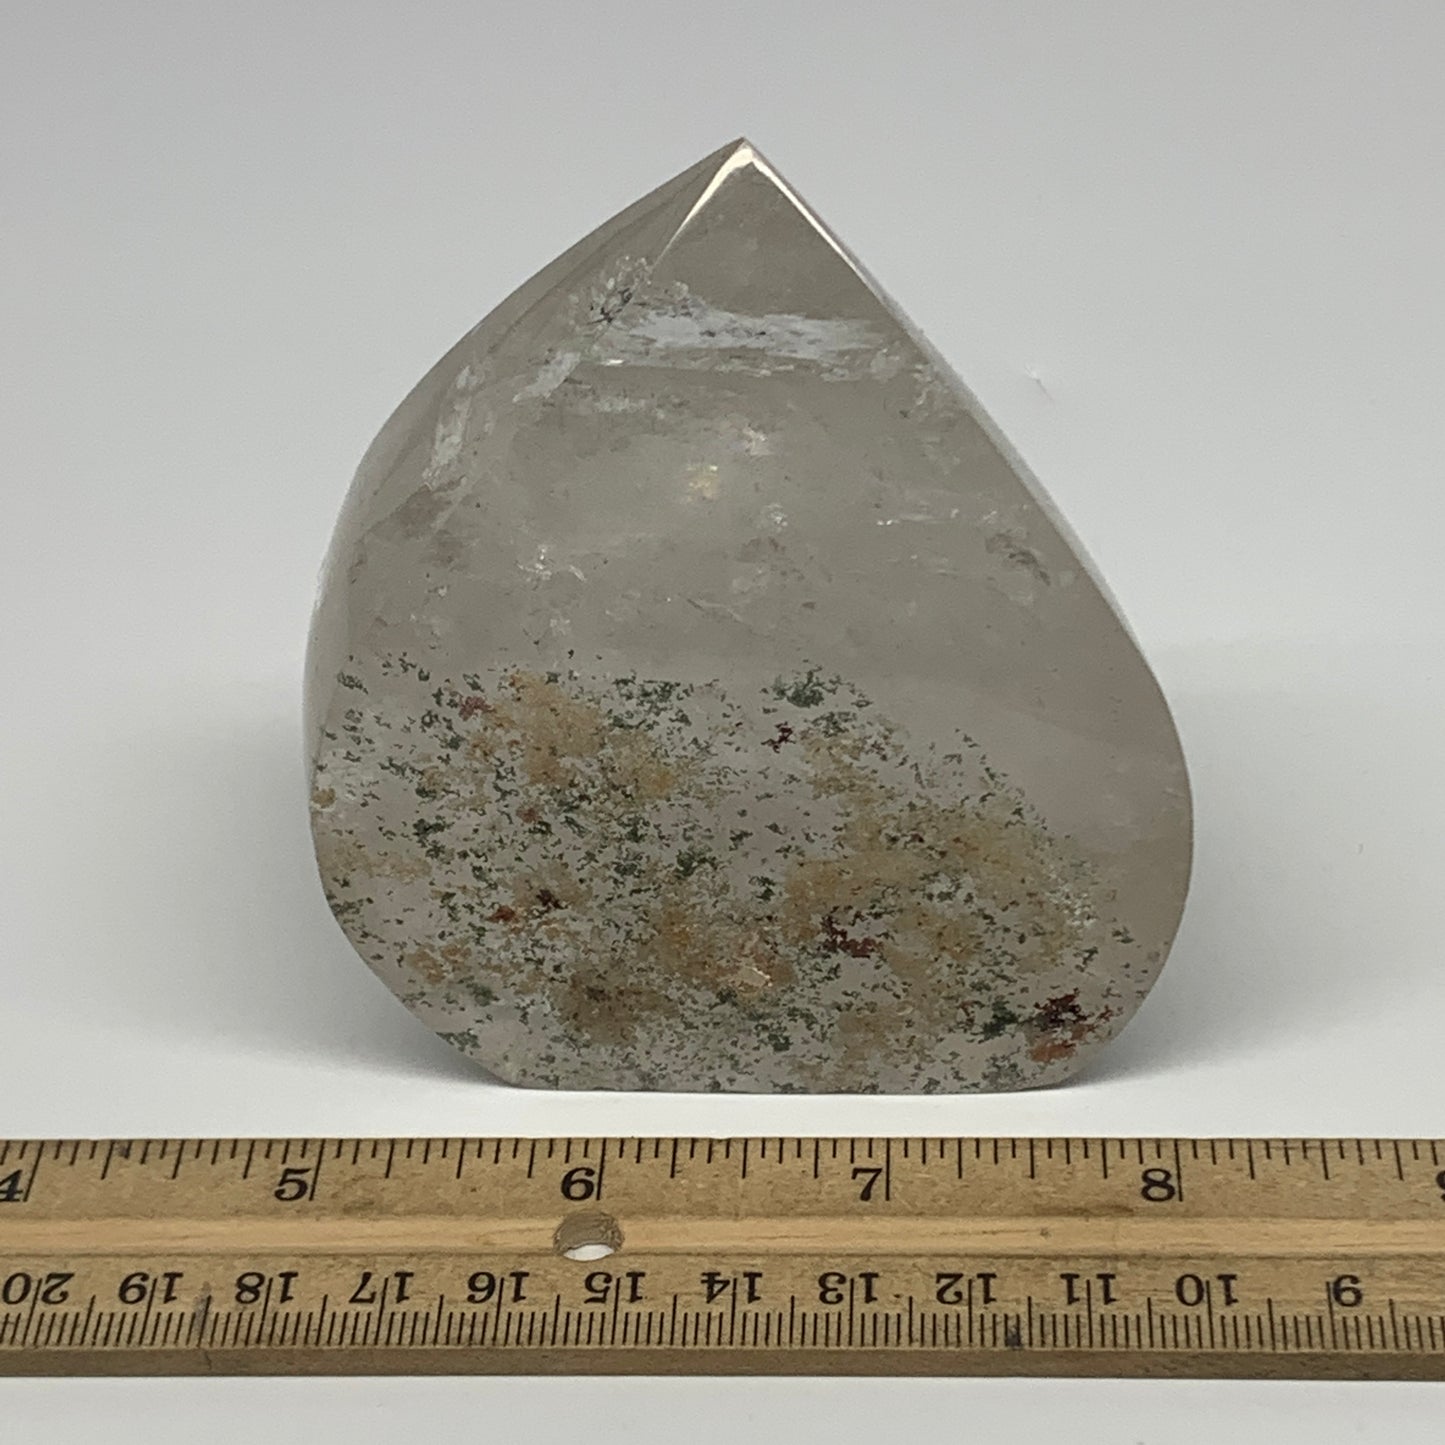 445.7g, 3.5"x3.1"x1.8", Natural Quartz Flame Polished Crystal @Brazil, B19142